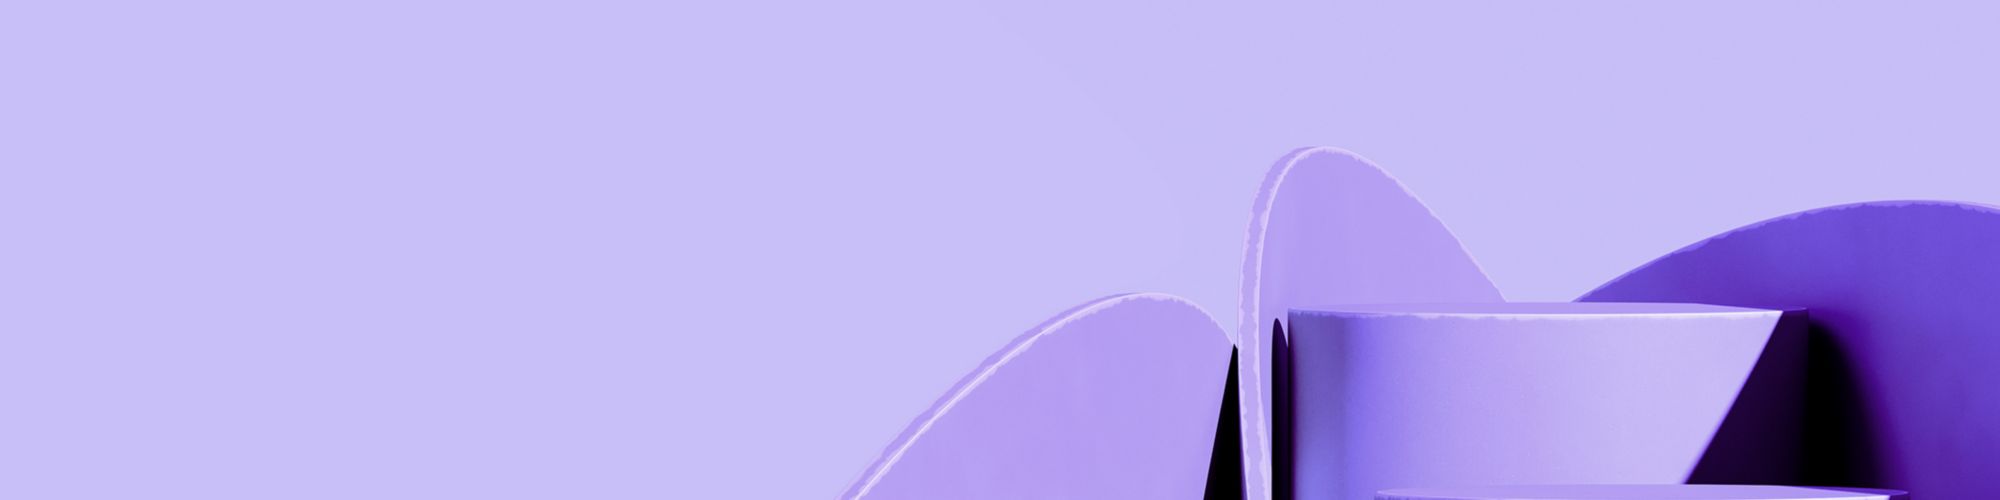 cylindres violets